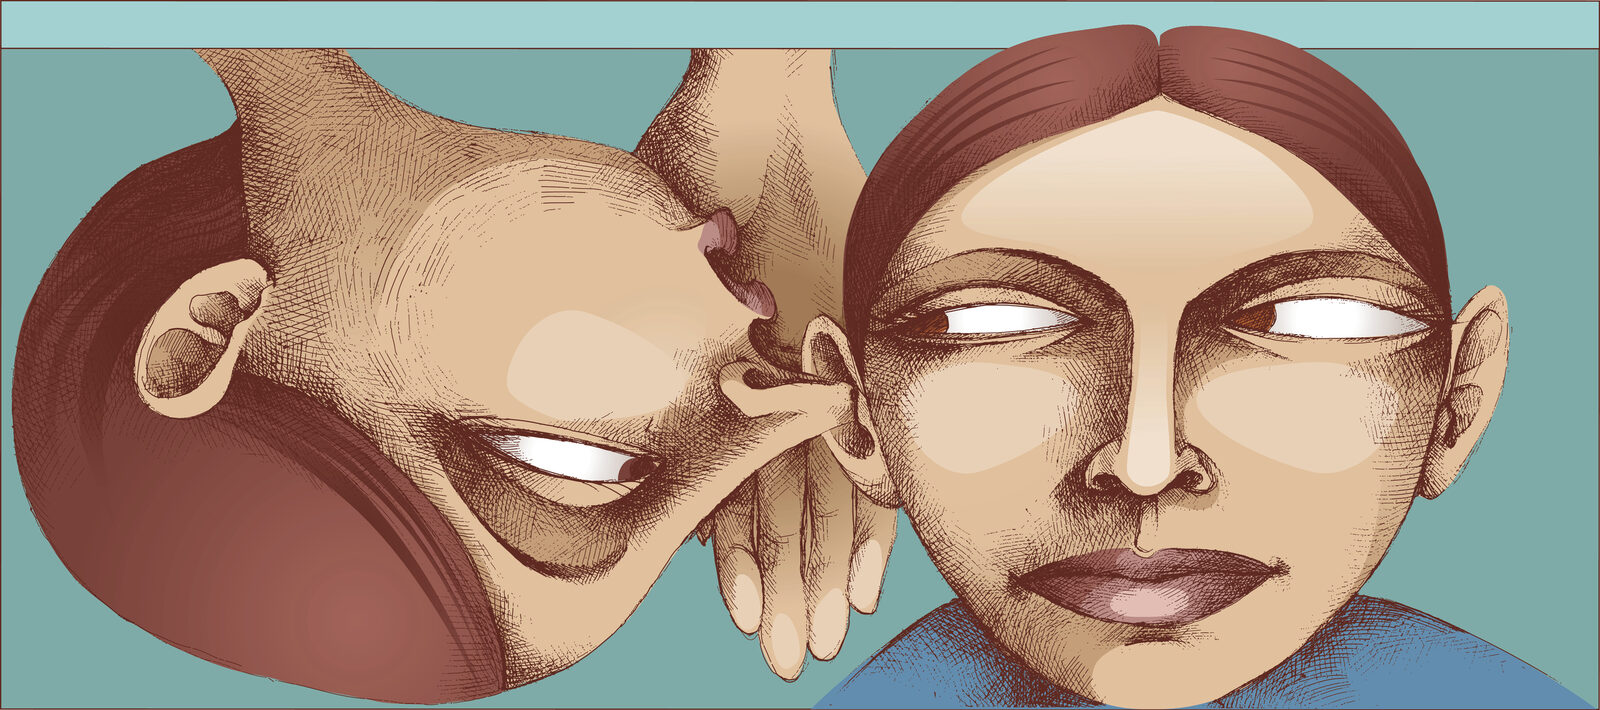 Een illustratie van twee personen tegen een blauwe achtergrond. De persoon links is op de kop getekend fluistert iets in het oor van de persoon rechts.